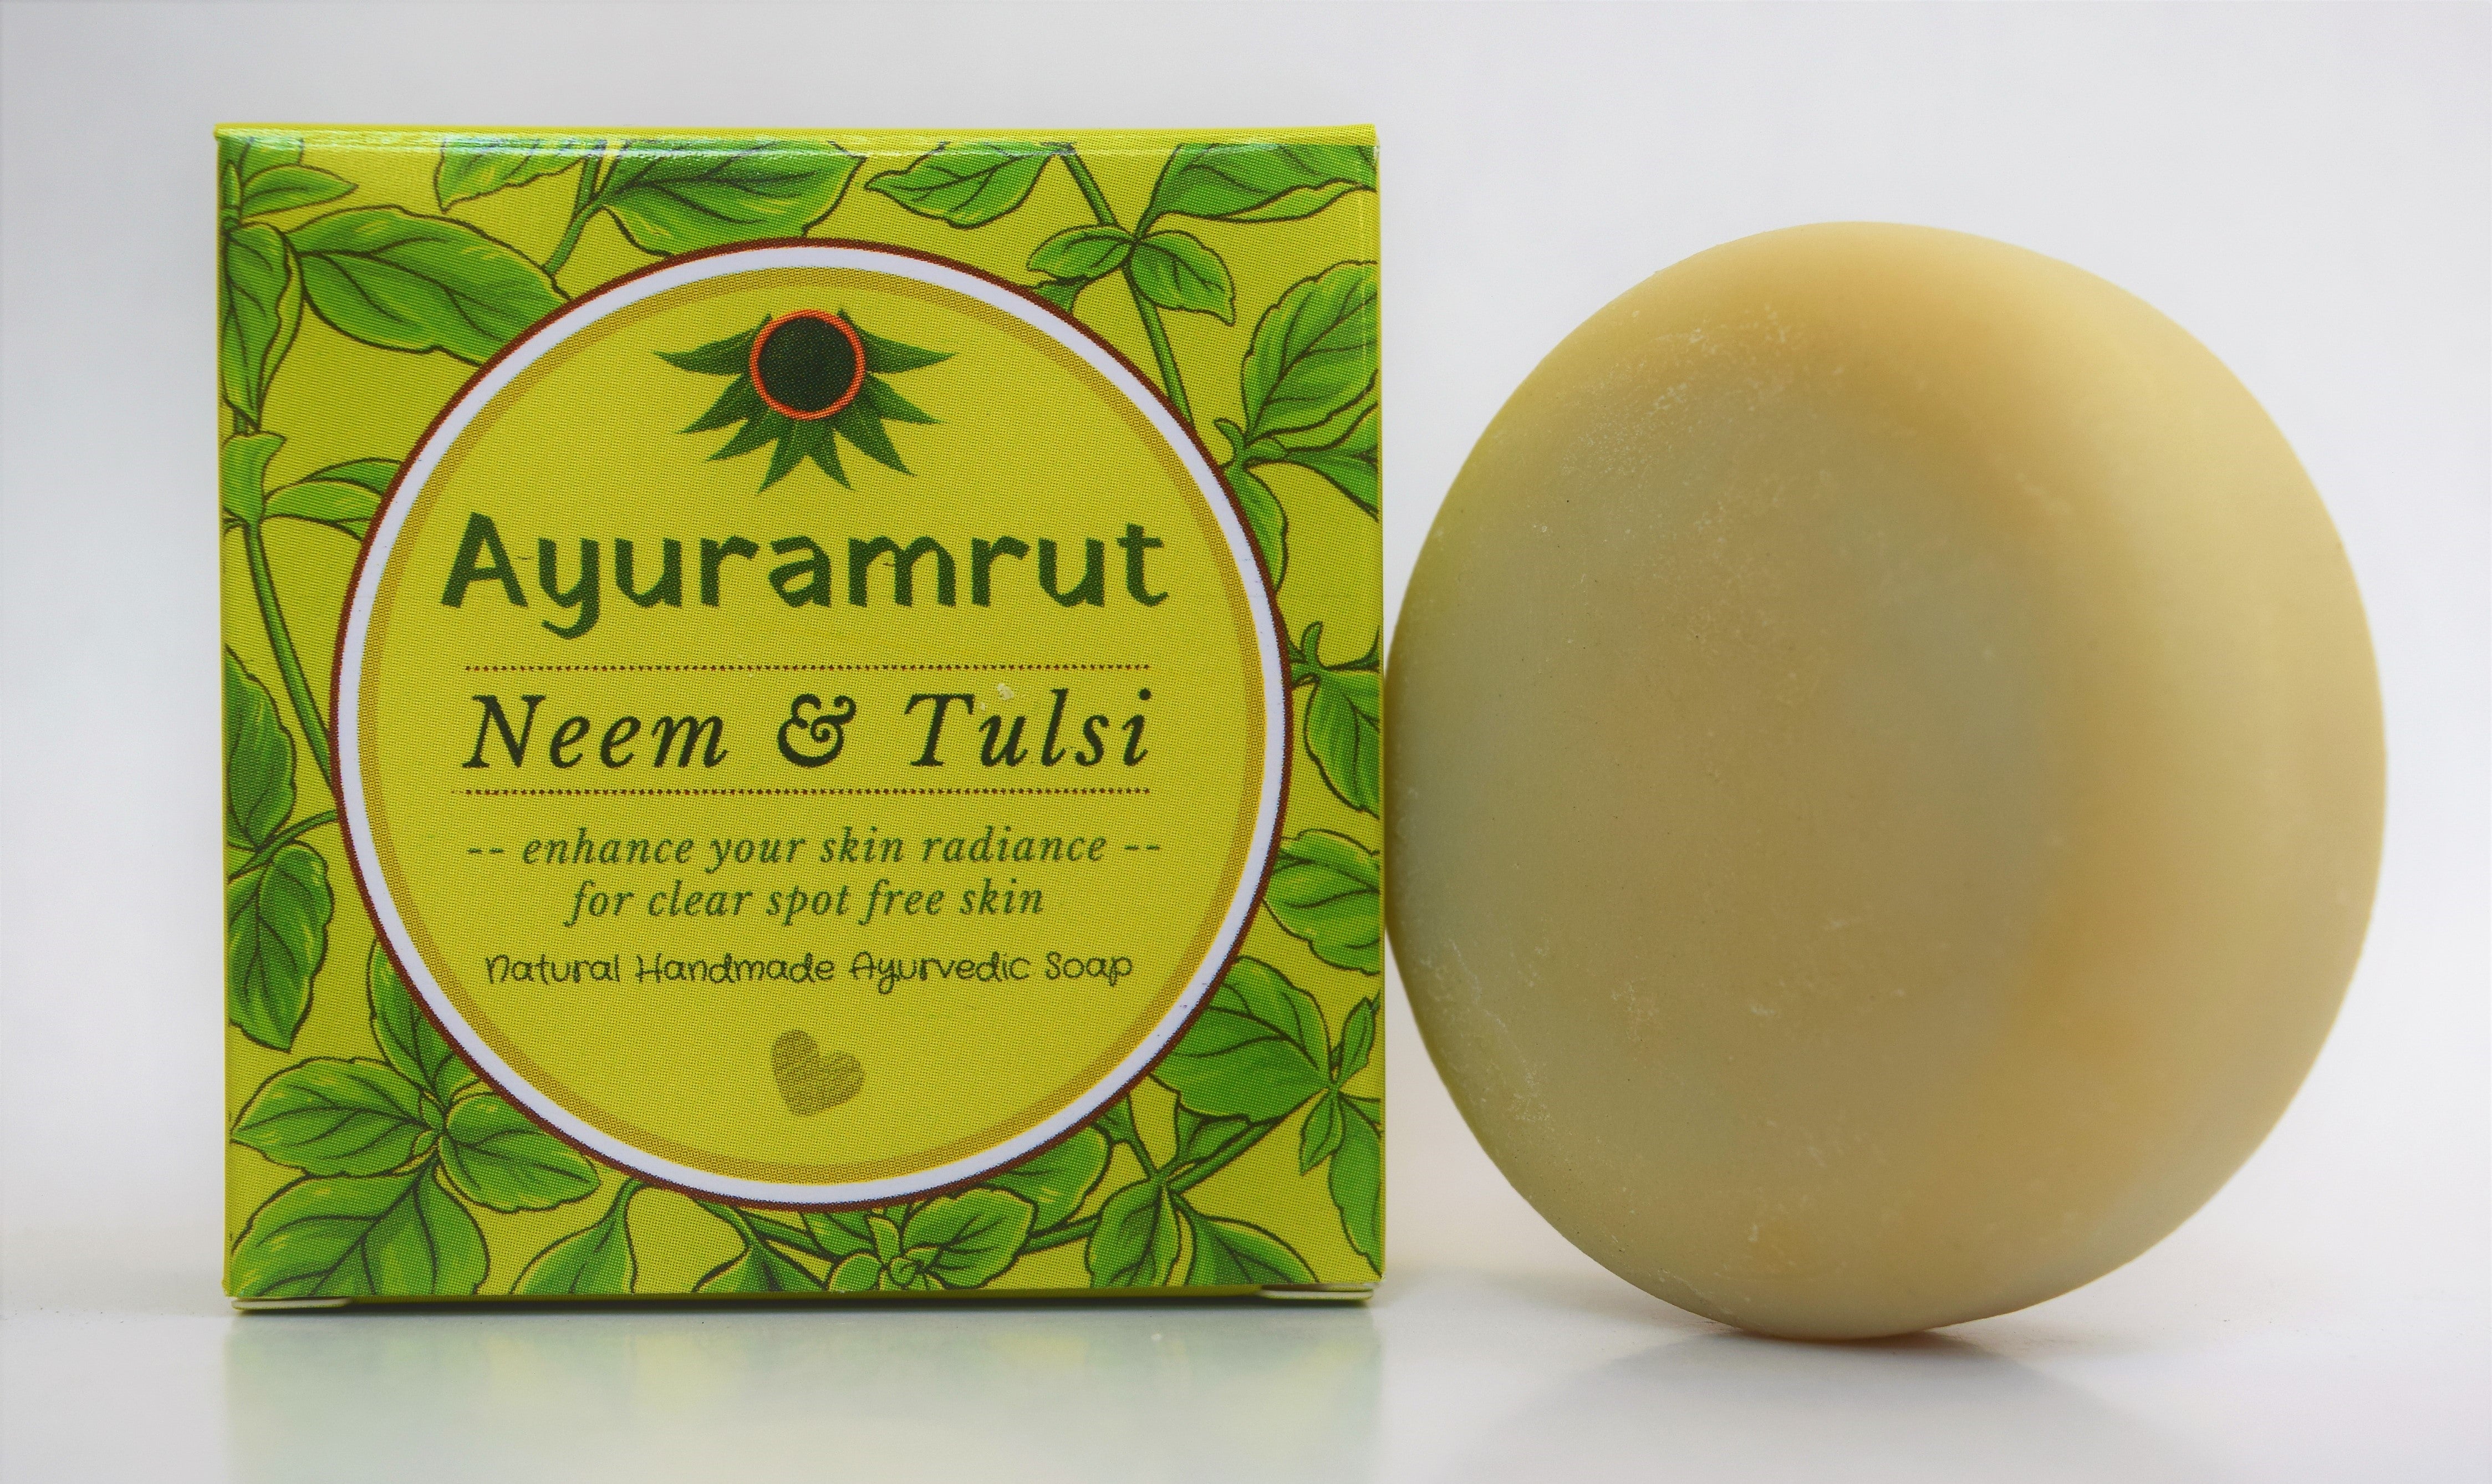 Ayuramrut Neem and Tulsi Natural Handmade Ayurvedic Soap (Pack of 4)